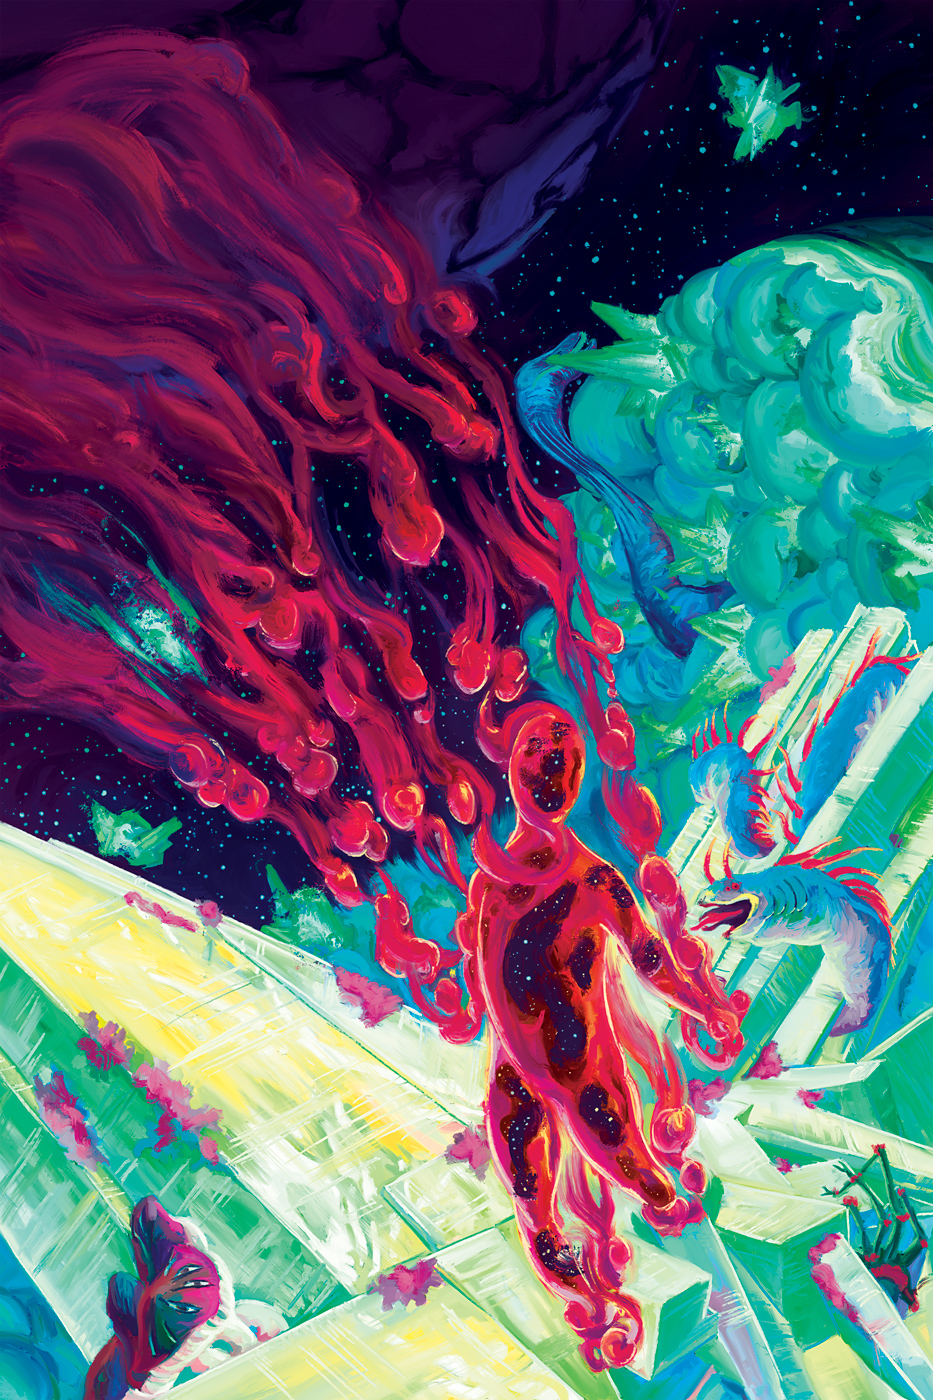 Retro Sci-Fi Cover Art for Necronautilus